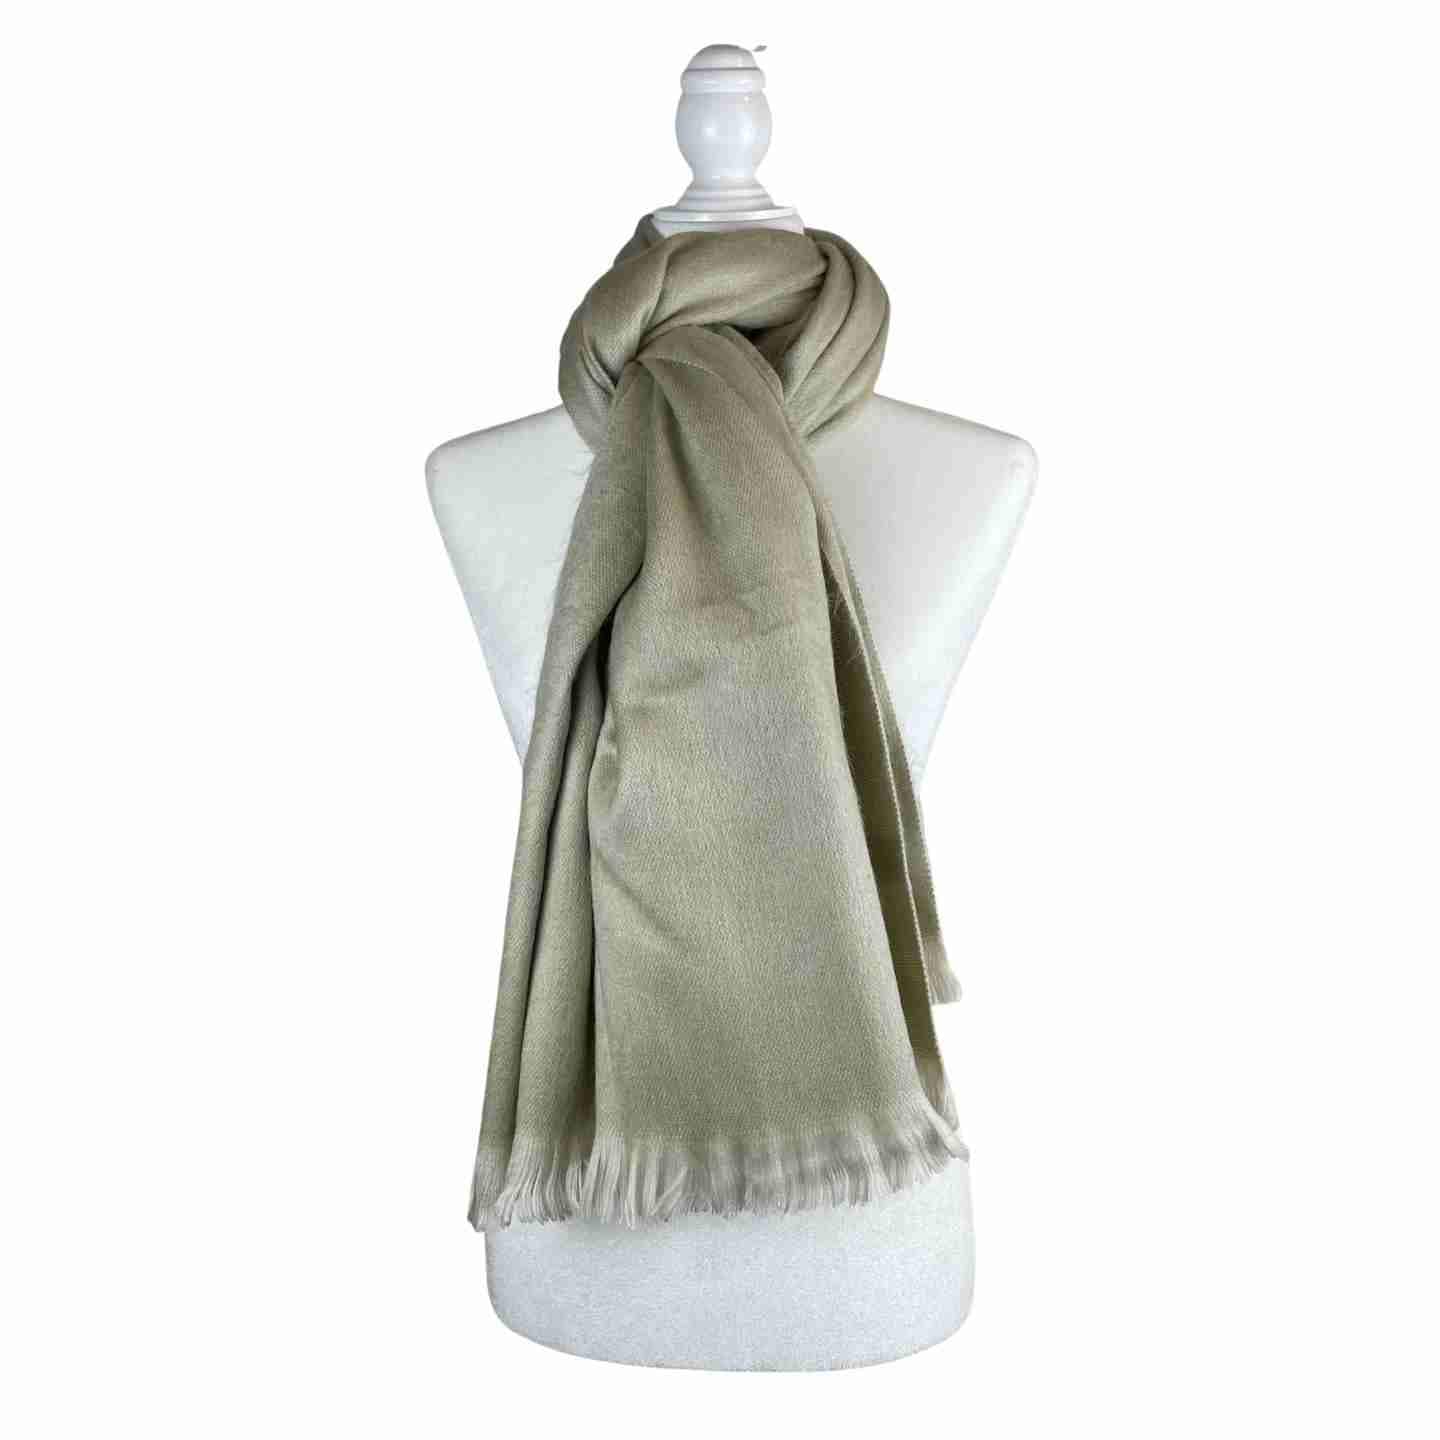 Soft and Warm Shoulder Shawl Wrap | Handcrafted Rebozo | Ecru Neutral